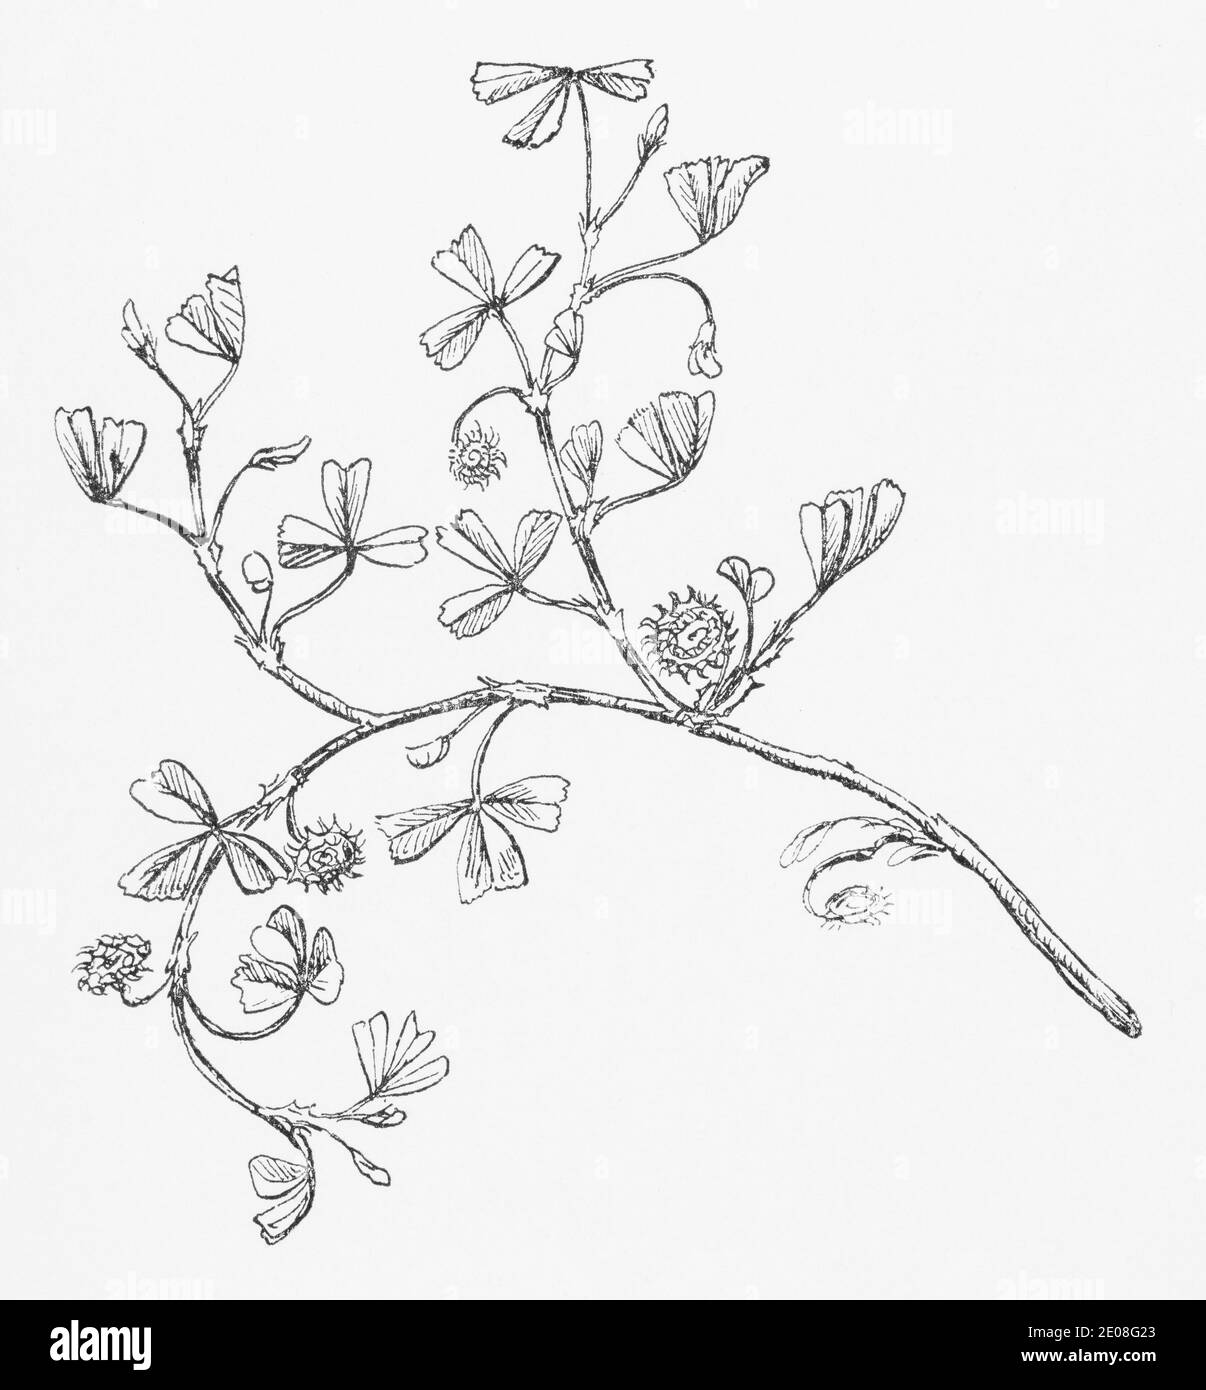 Ancienne gravure d'illustration botanique de Medick denté / Medicago polymorpha, Medicago denticulata. Plante médicinale traditionnelle. Voir Remarques Banque D'Images